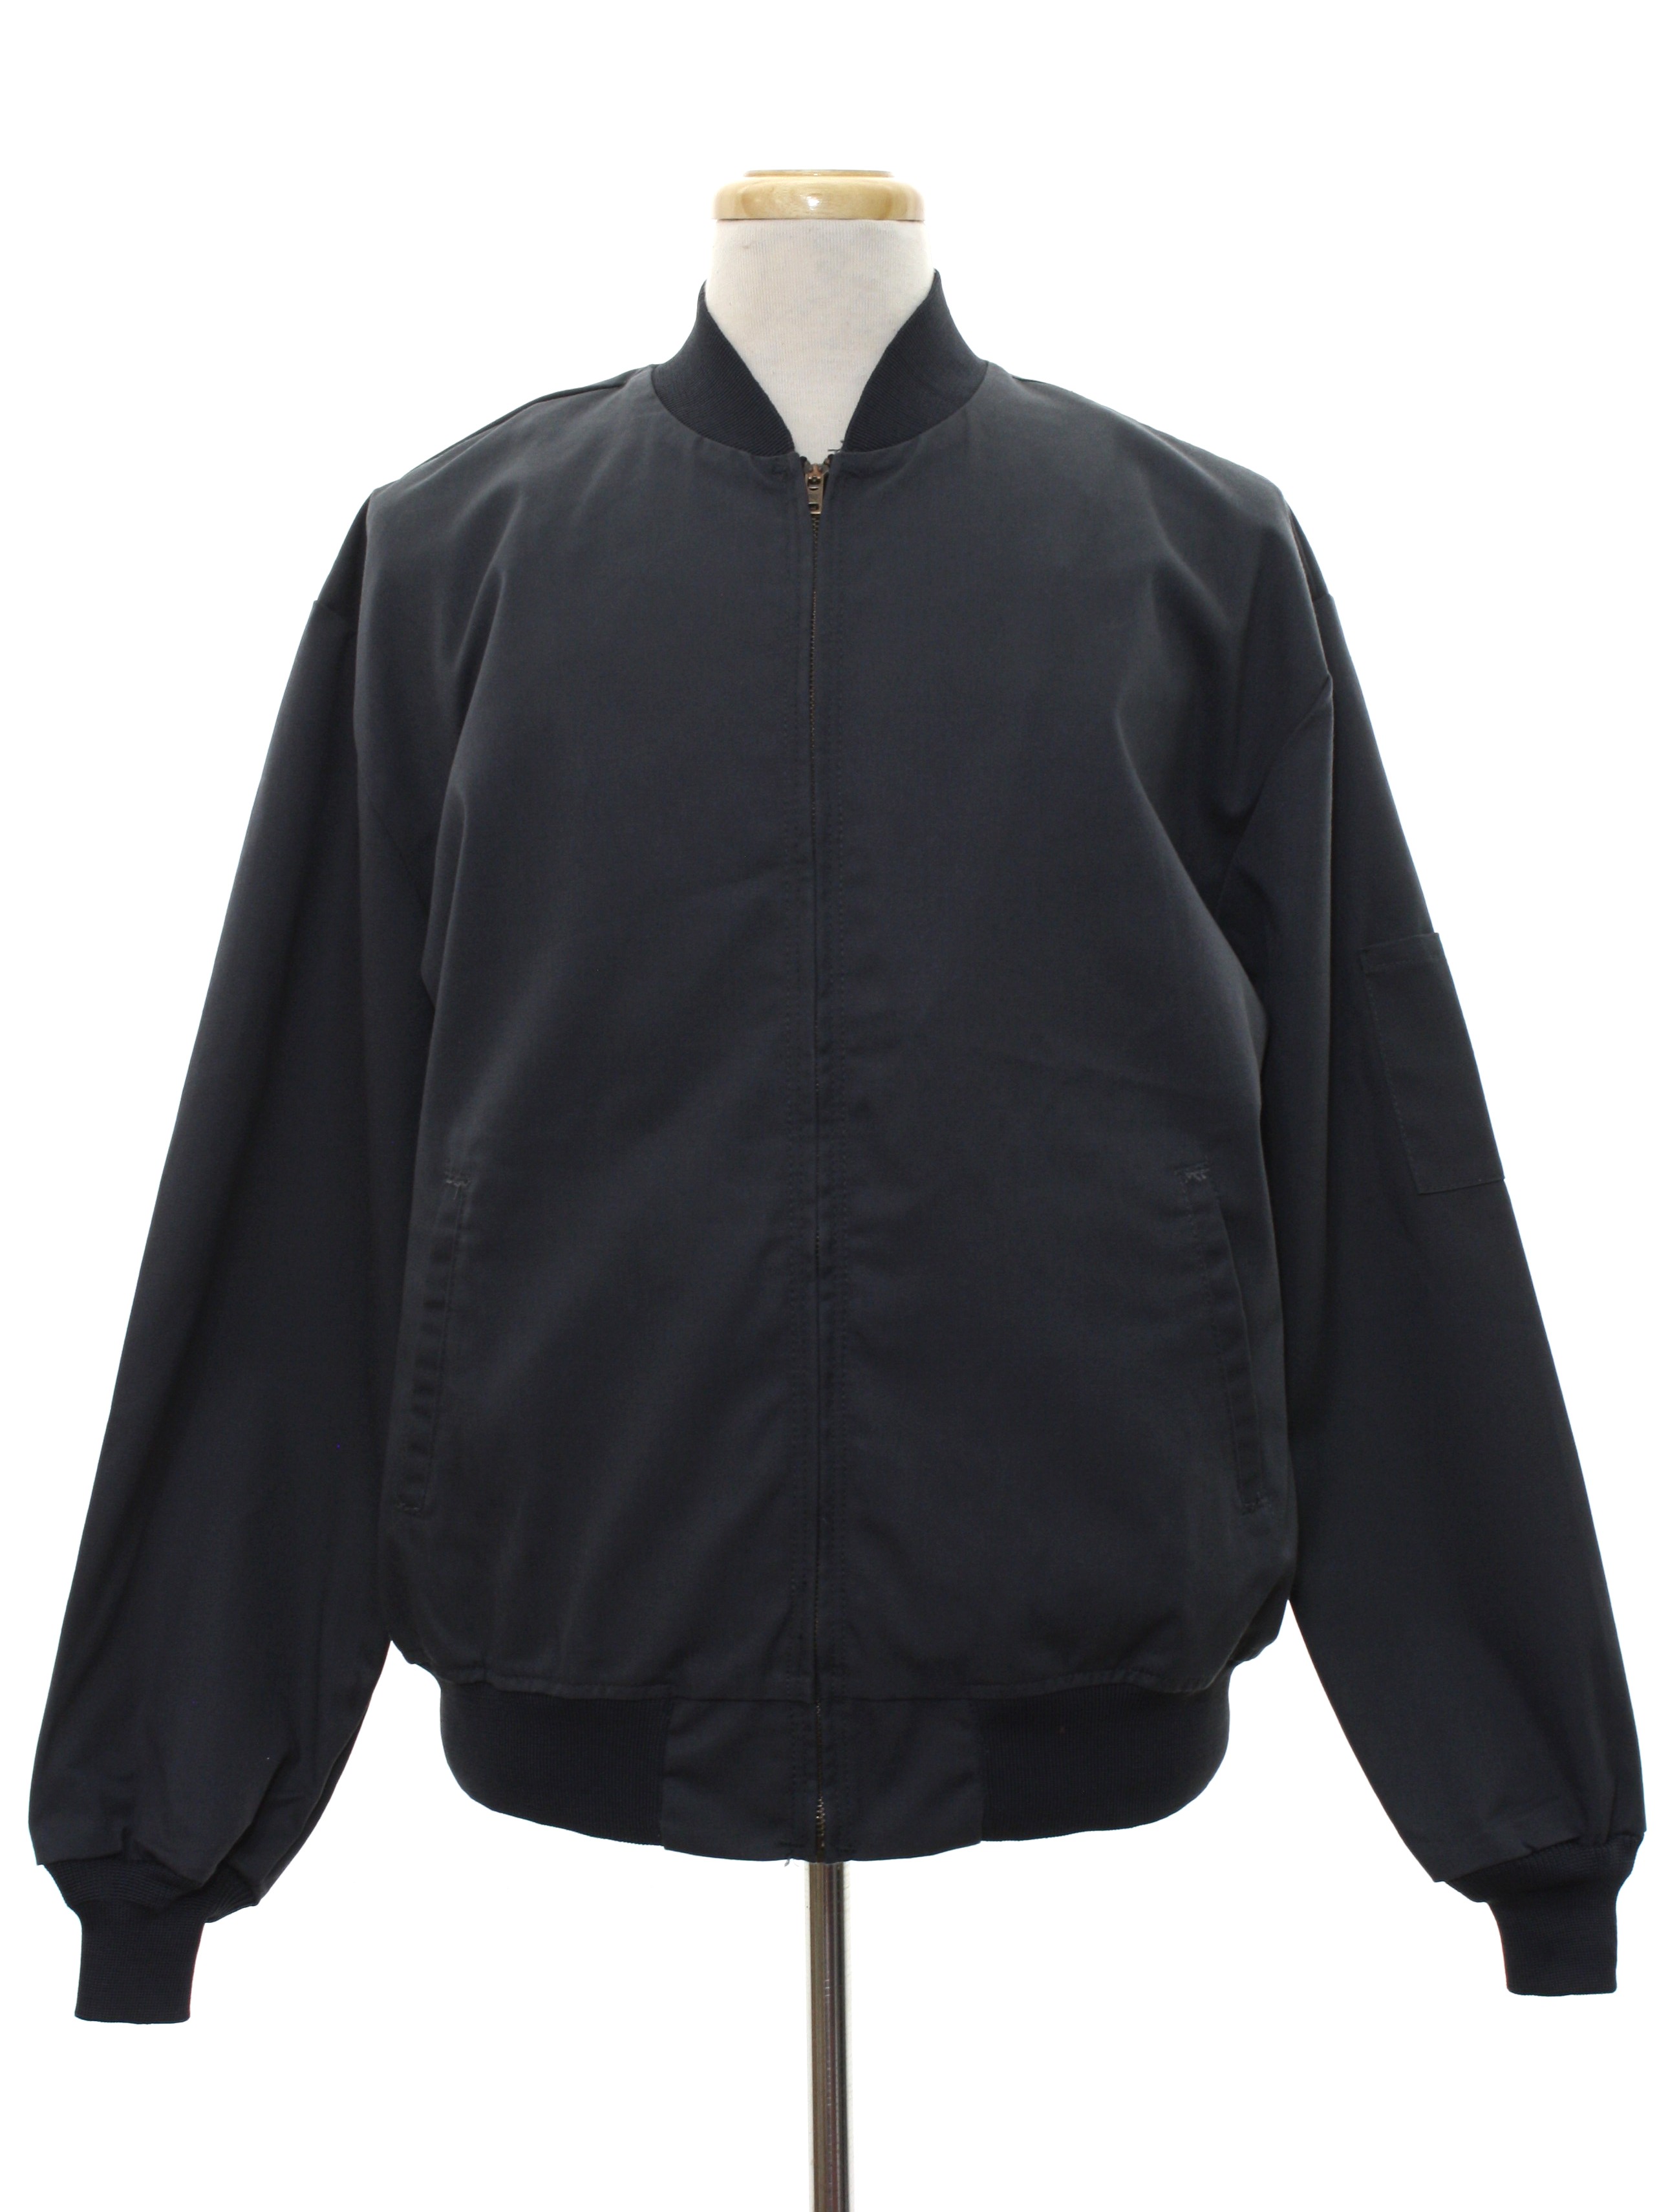 Eighties Vintage Jacket: Late 80s or Early 90s -Red Kap- Mens dark grey ...